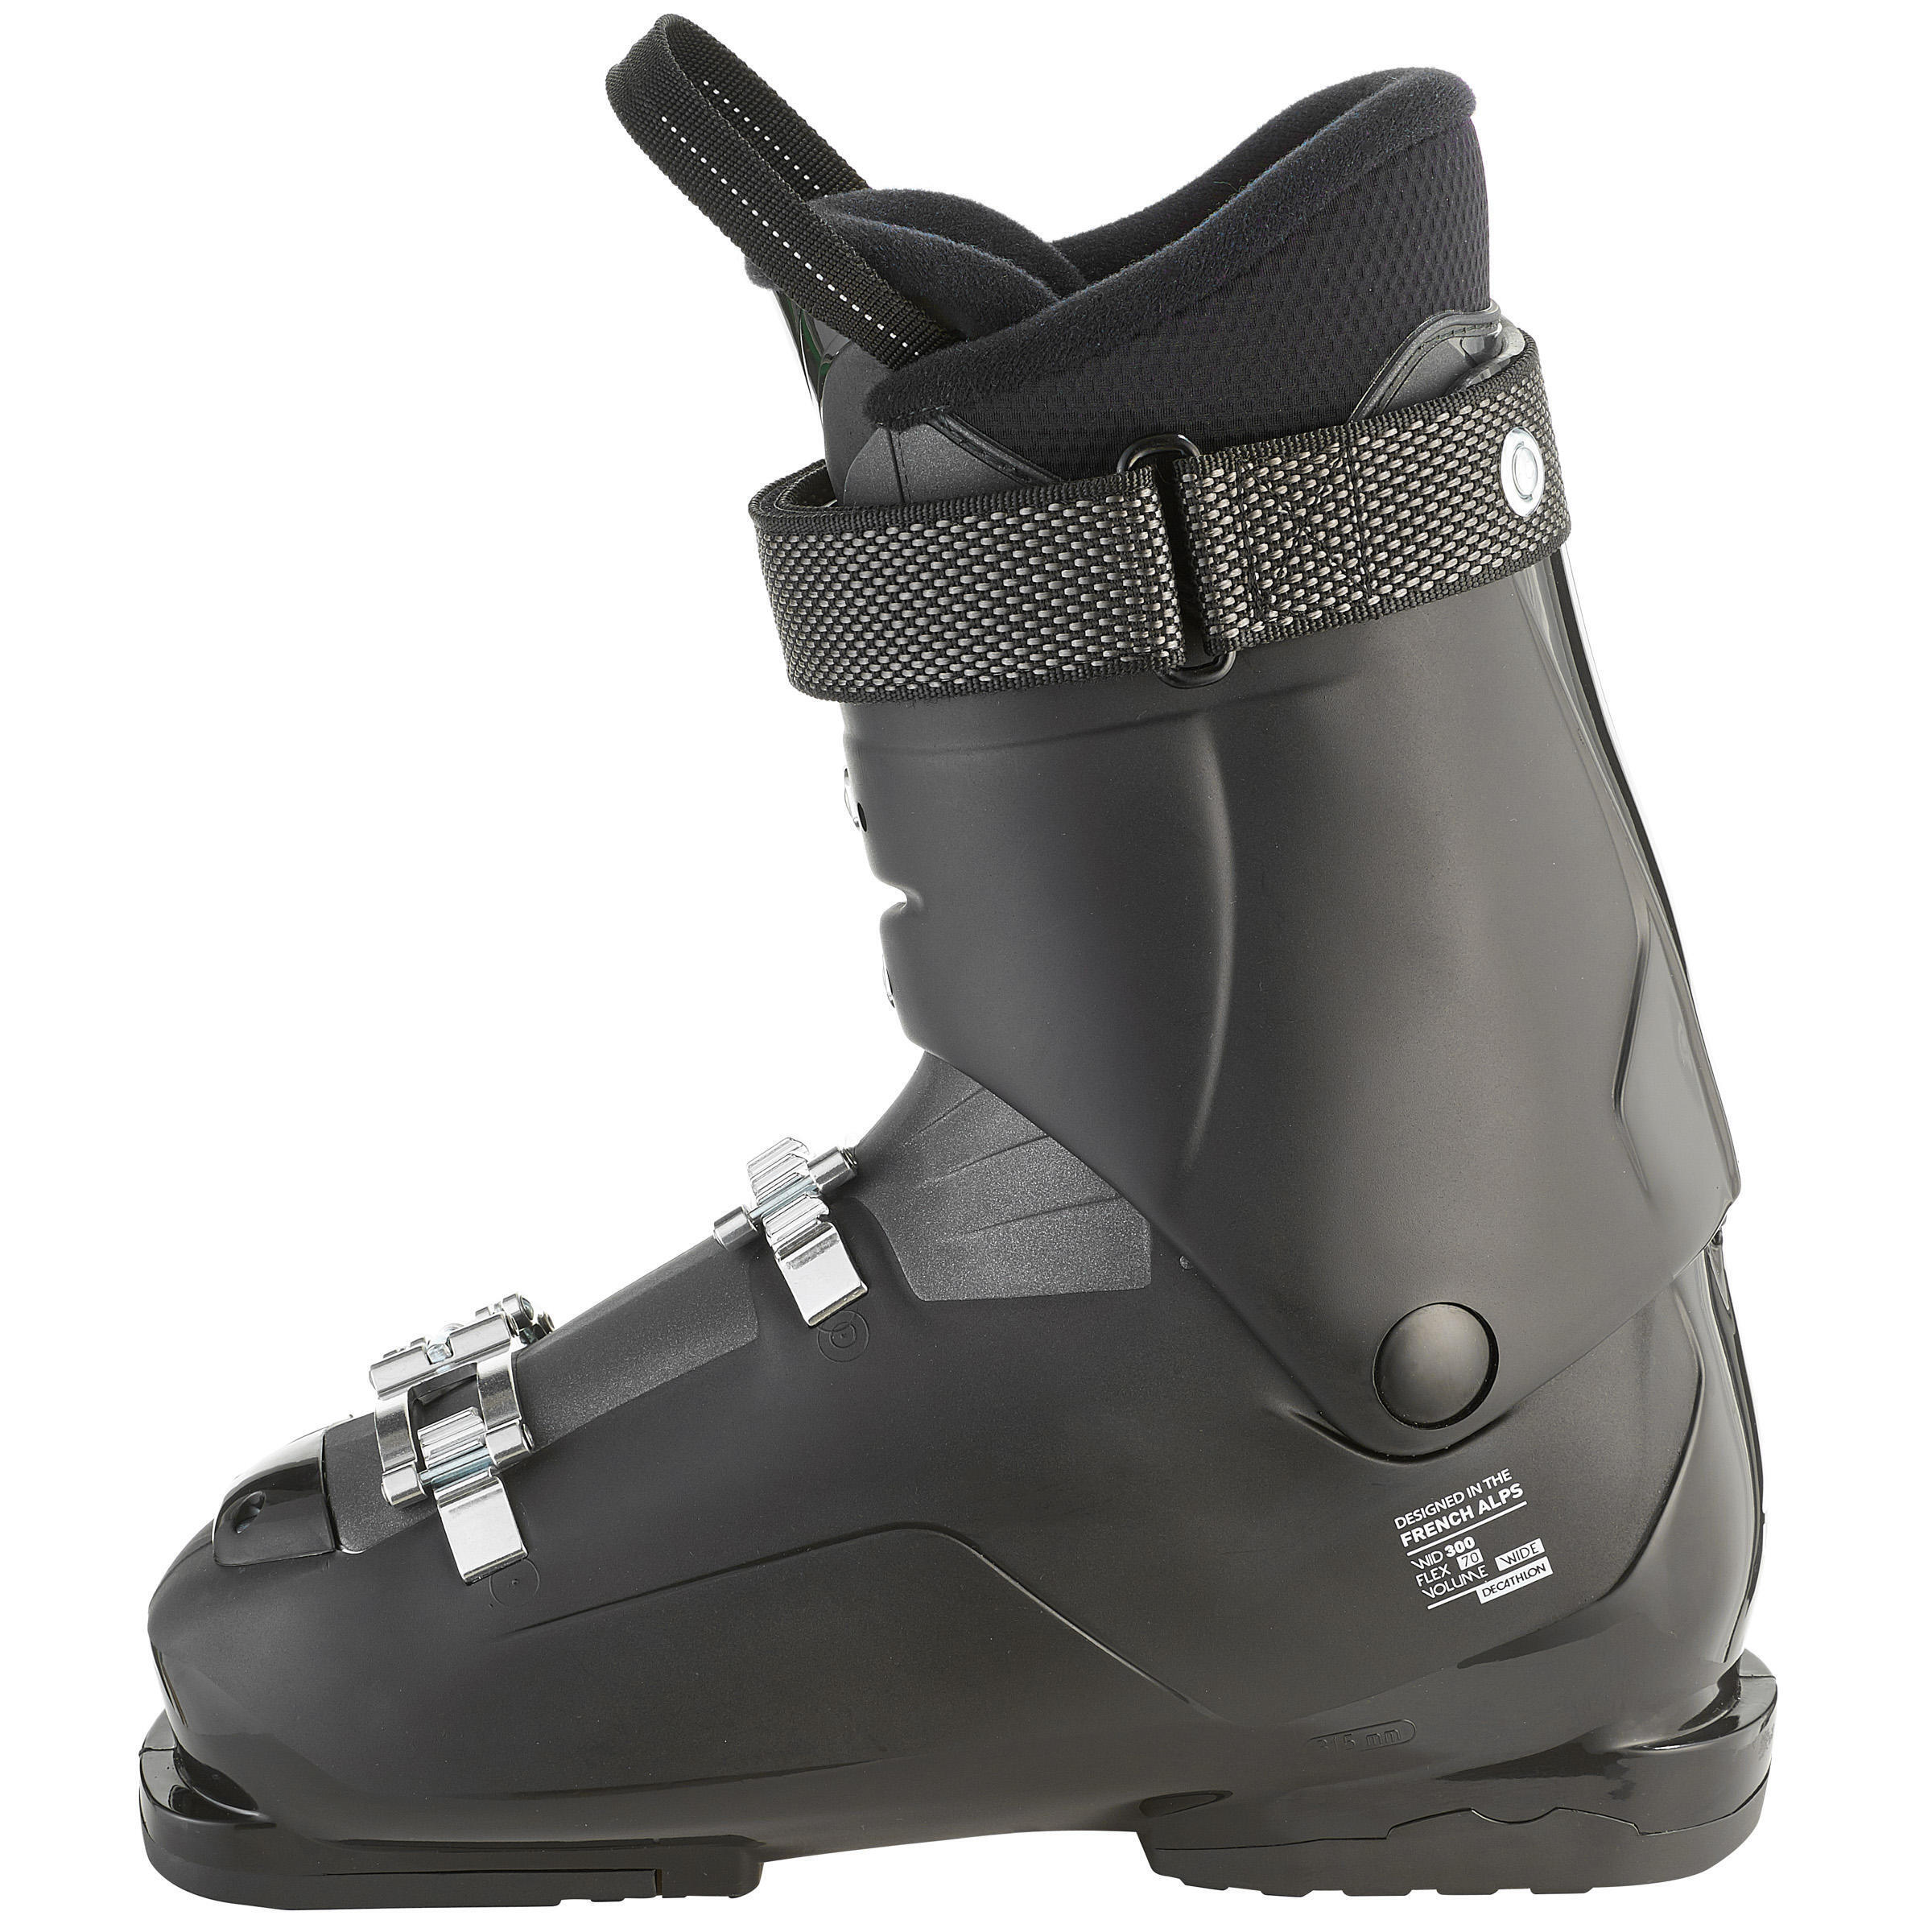 Refurbished Mens Downhill Ski Boots Wid Black - D Grade 7/7